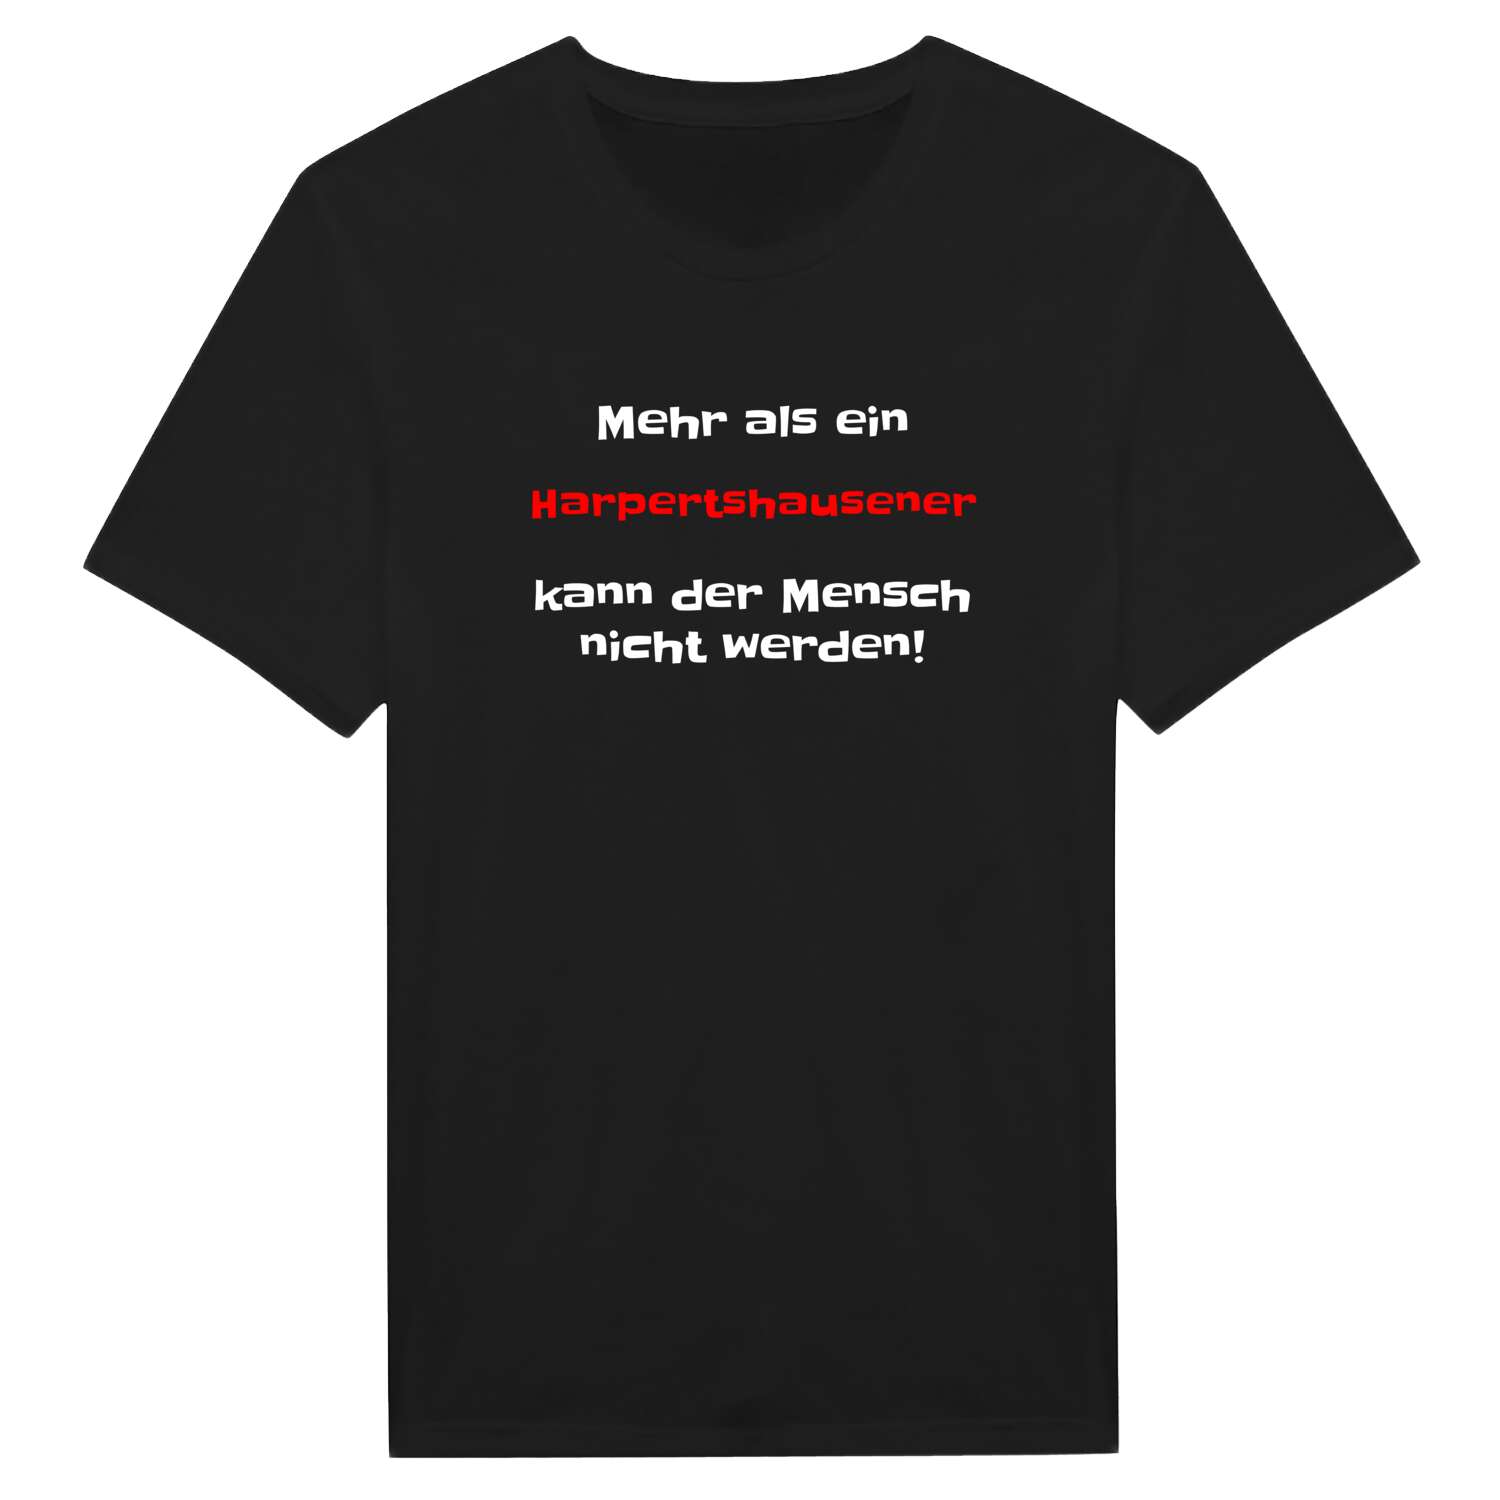 Harpertshausen T-Shirt »Mehr als ein«